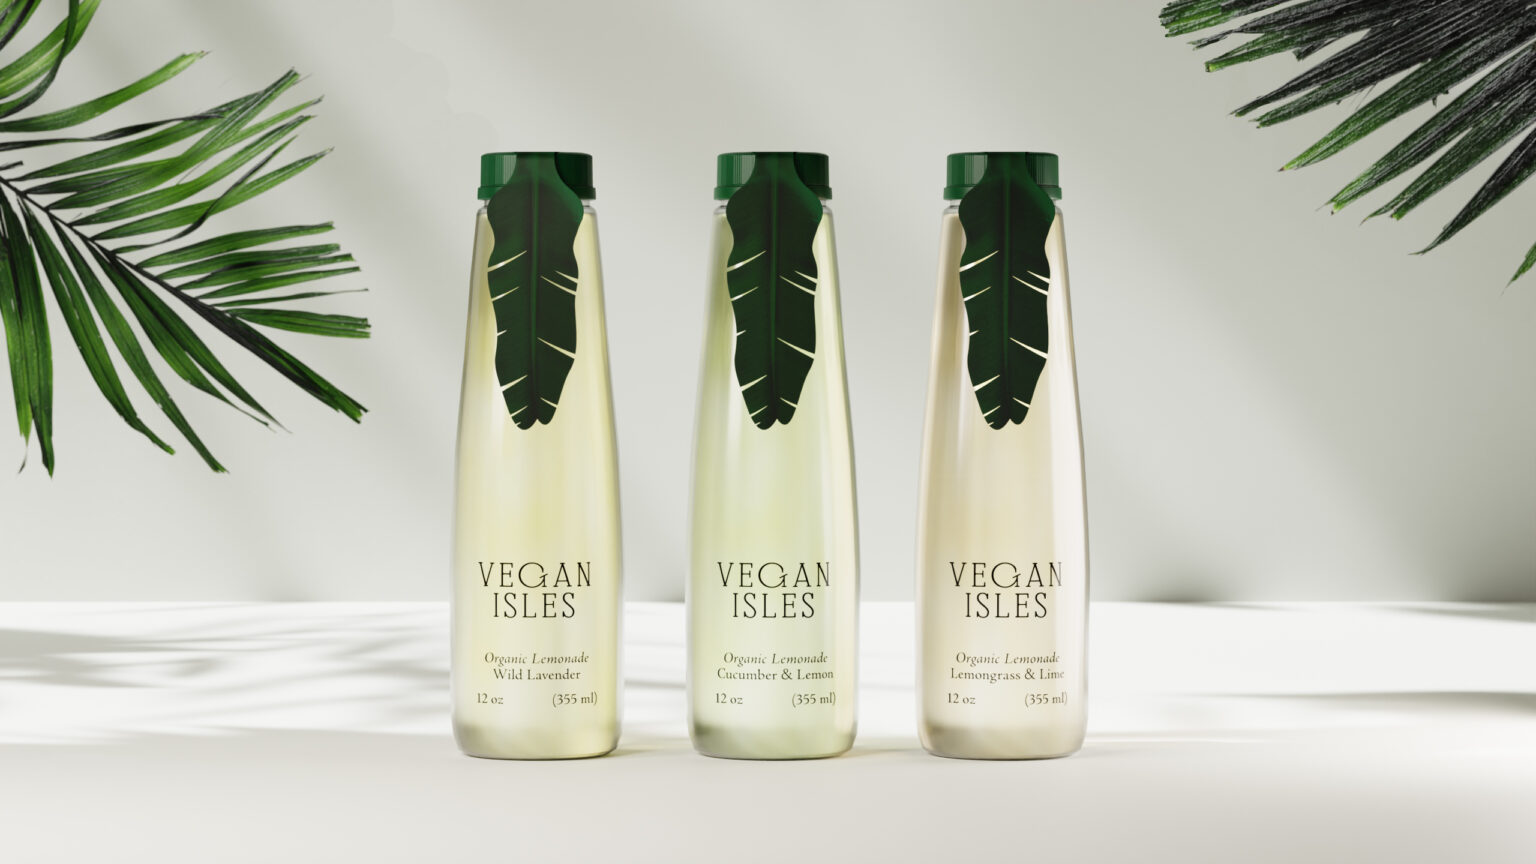 Vegan Isles Packaging Design